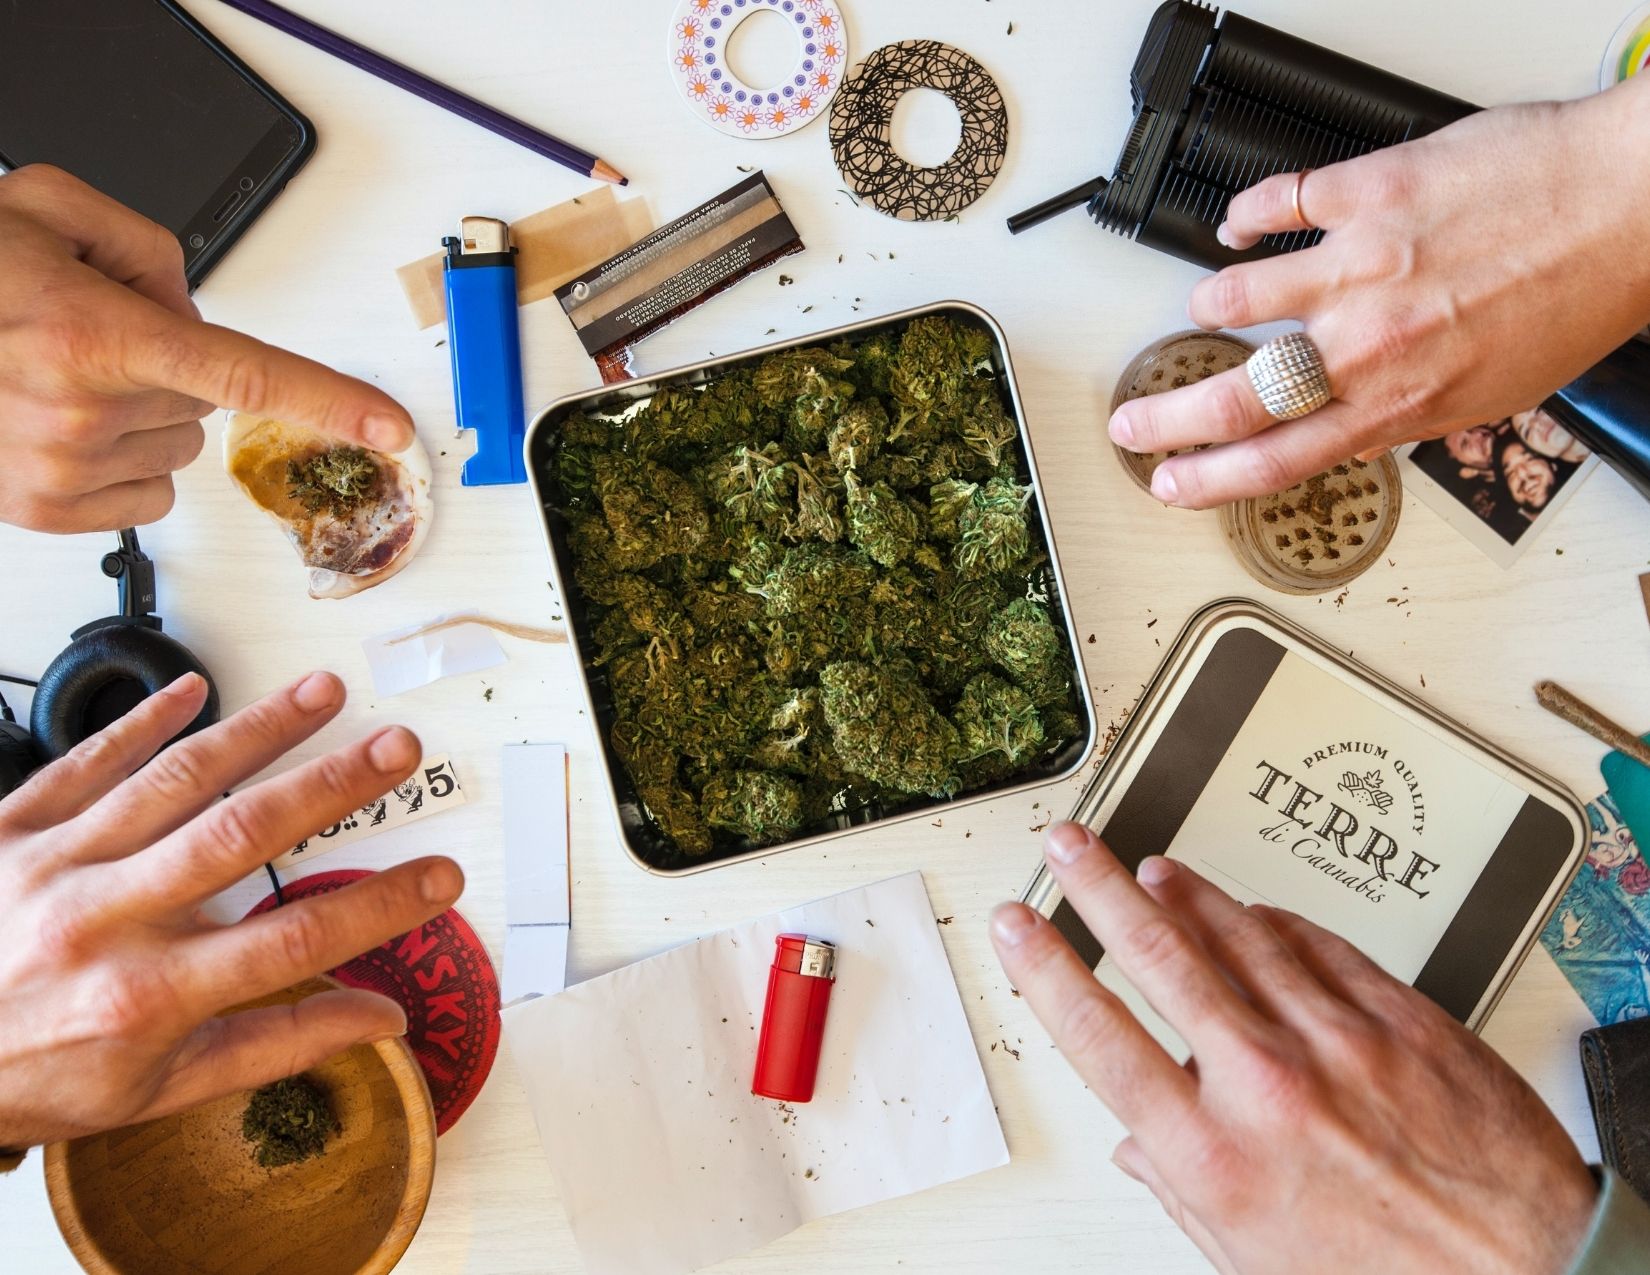 Sharing Cannabis